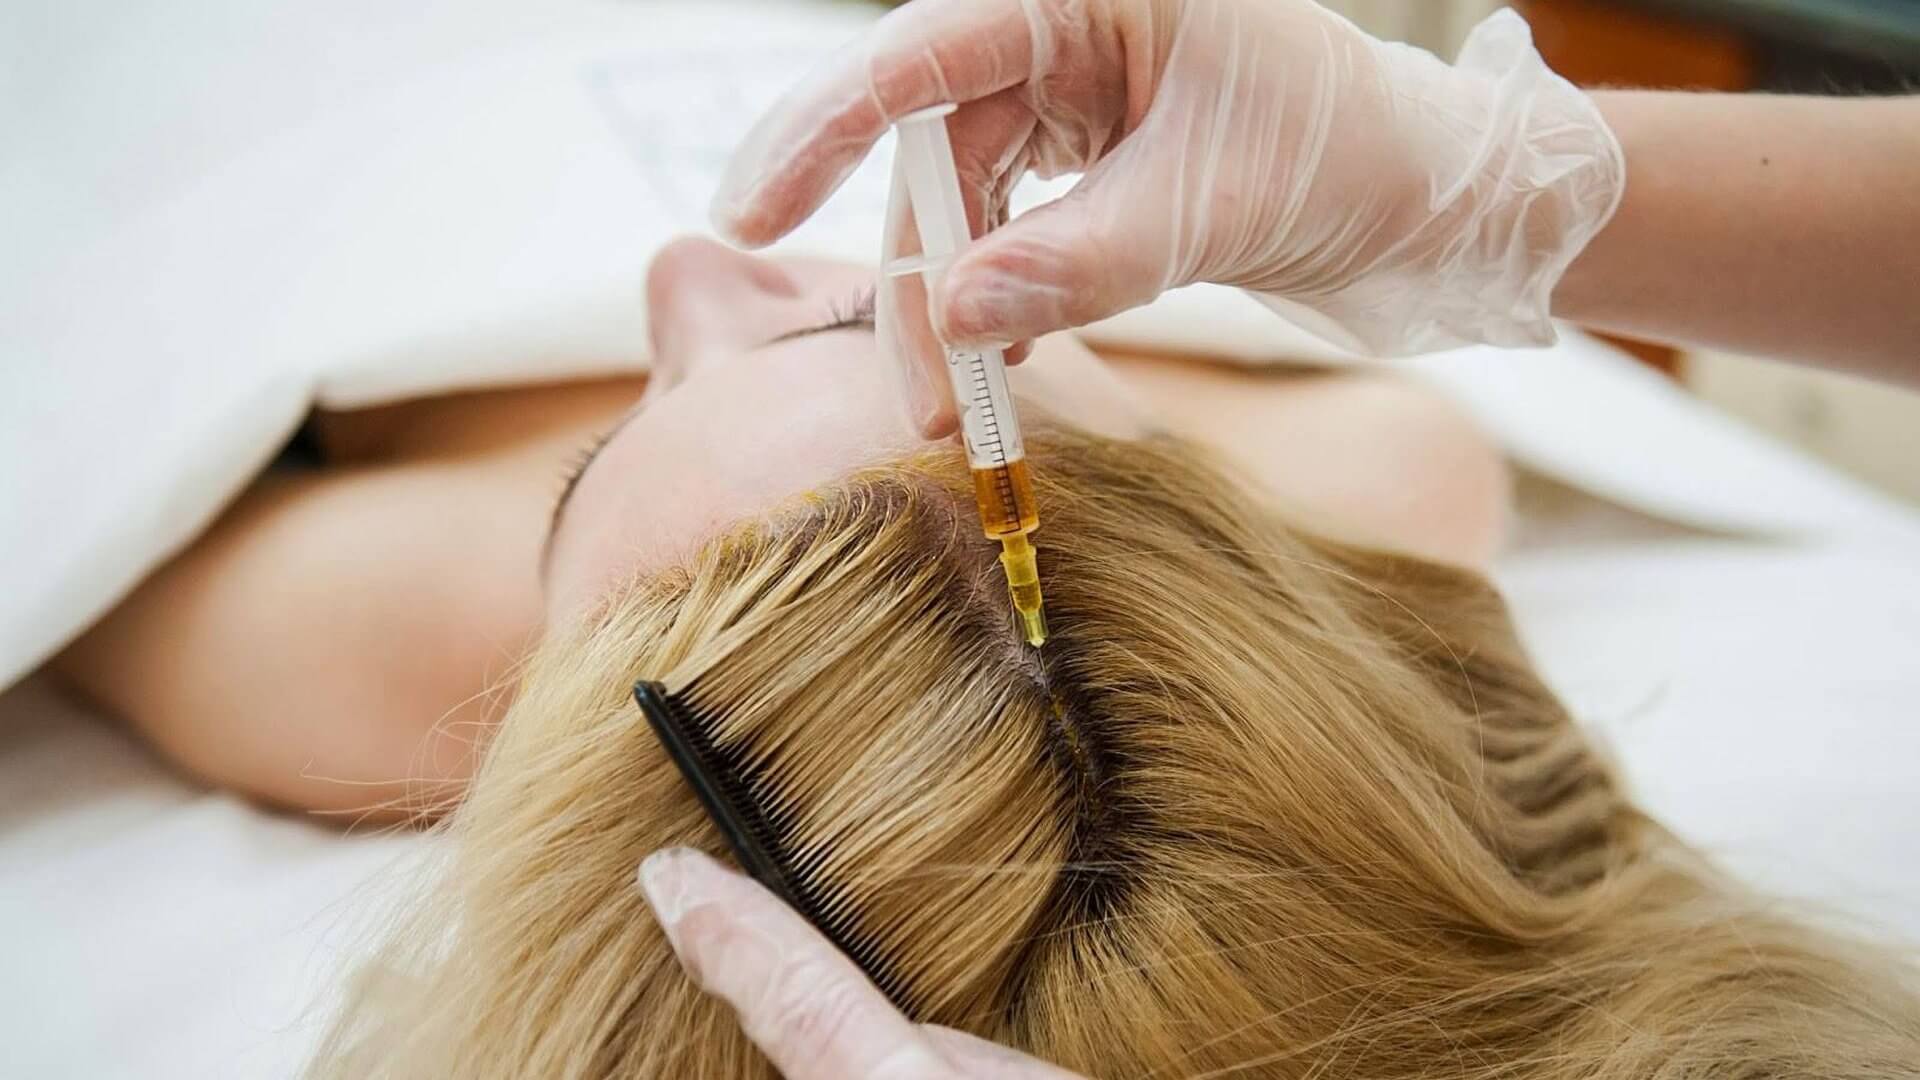 تاثیر مزوتراپی مو چیست؟ بهترین درمان ریزش مو + قیمت و عوارض